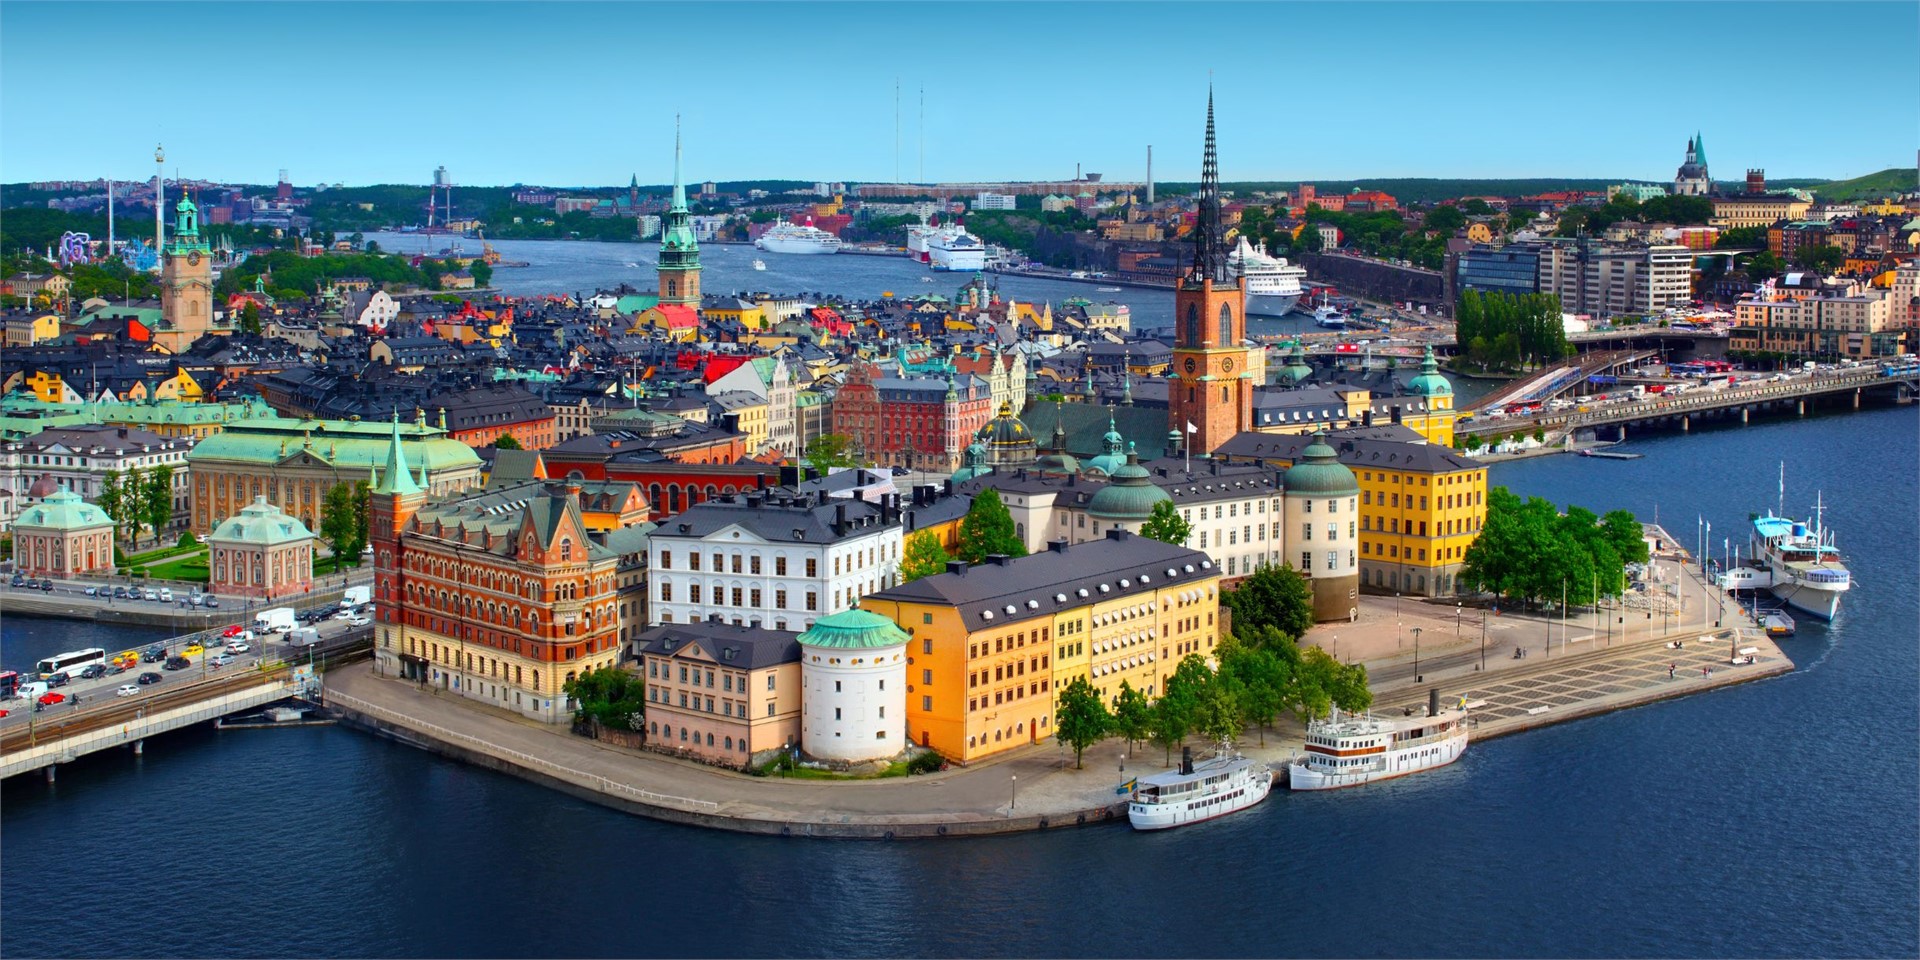 Buche Deine Reise zum ABBA Museum in Stockholm
